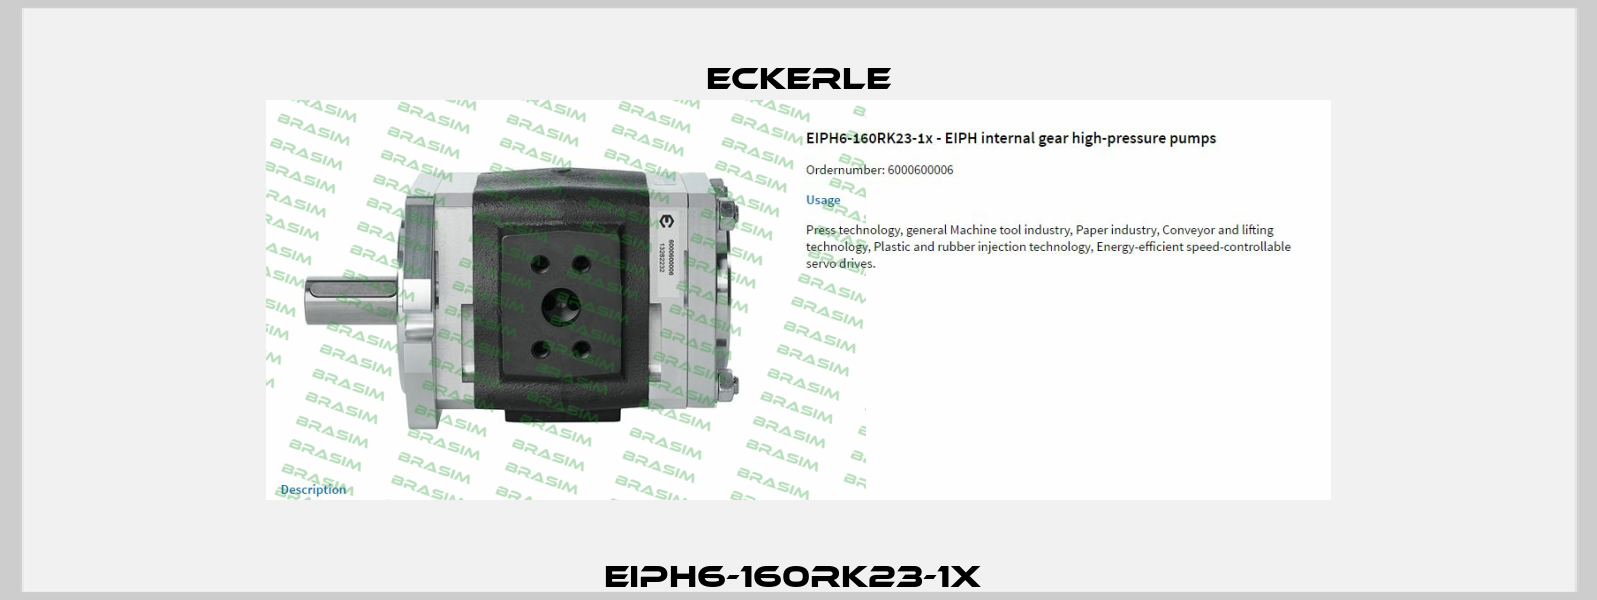 EIPH6-160RK23-1x  Eckerle